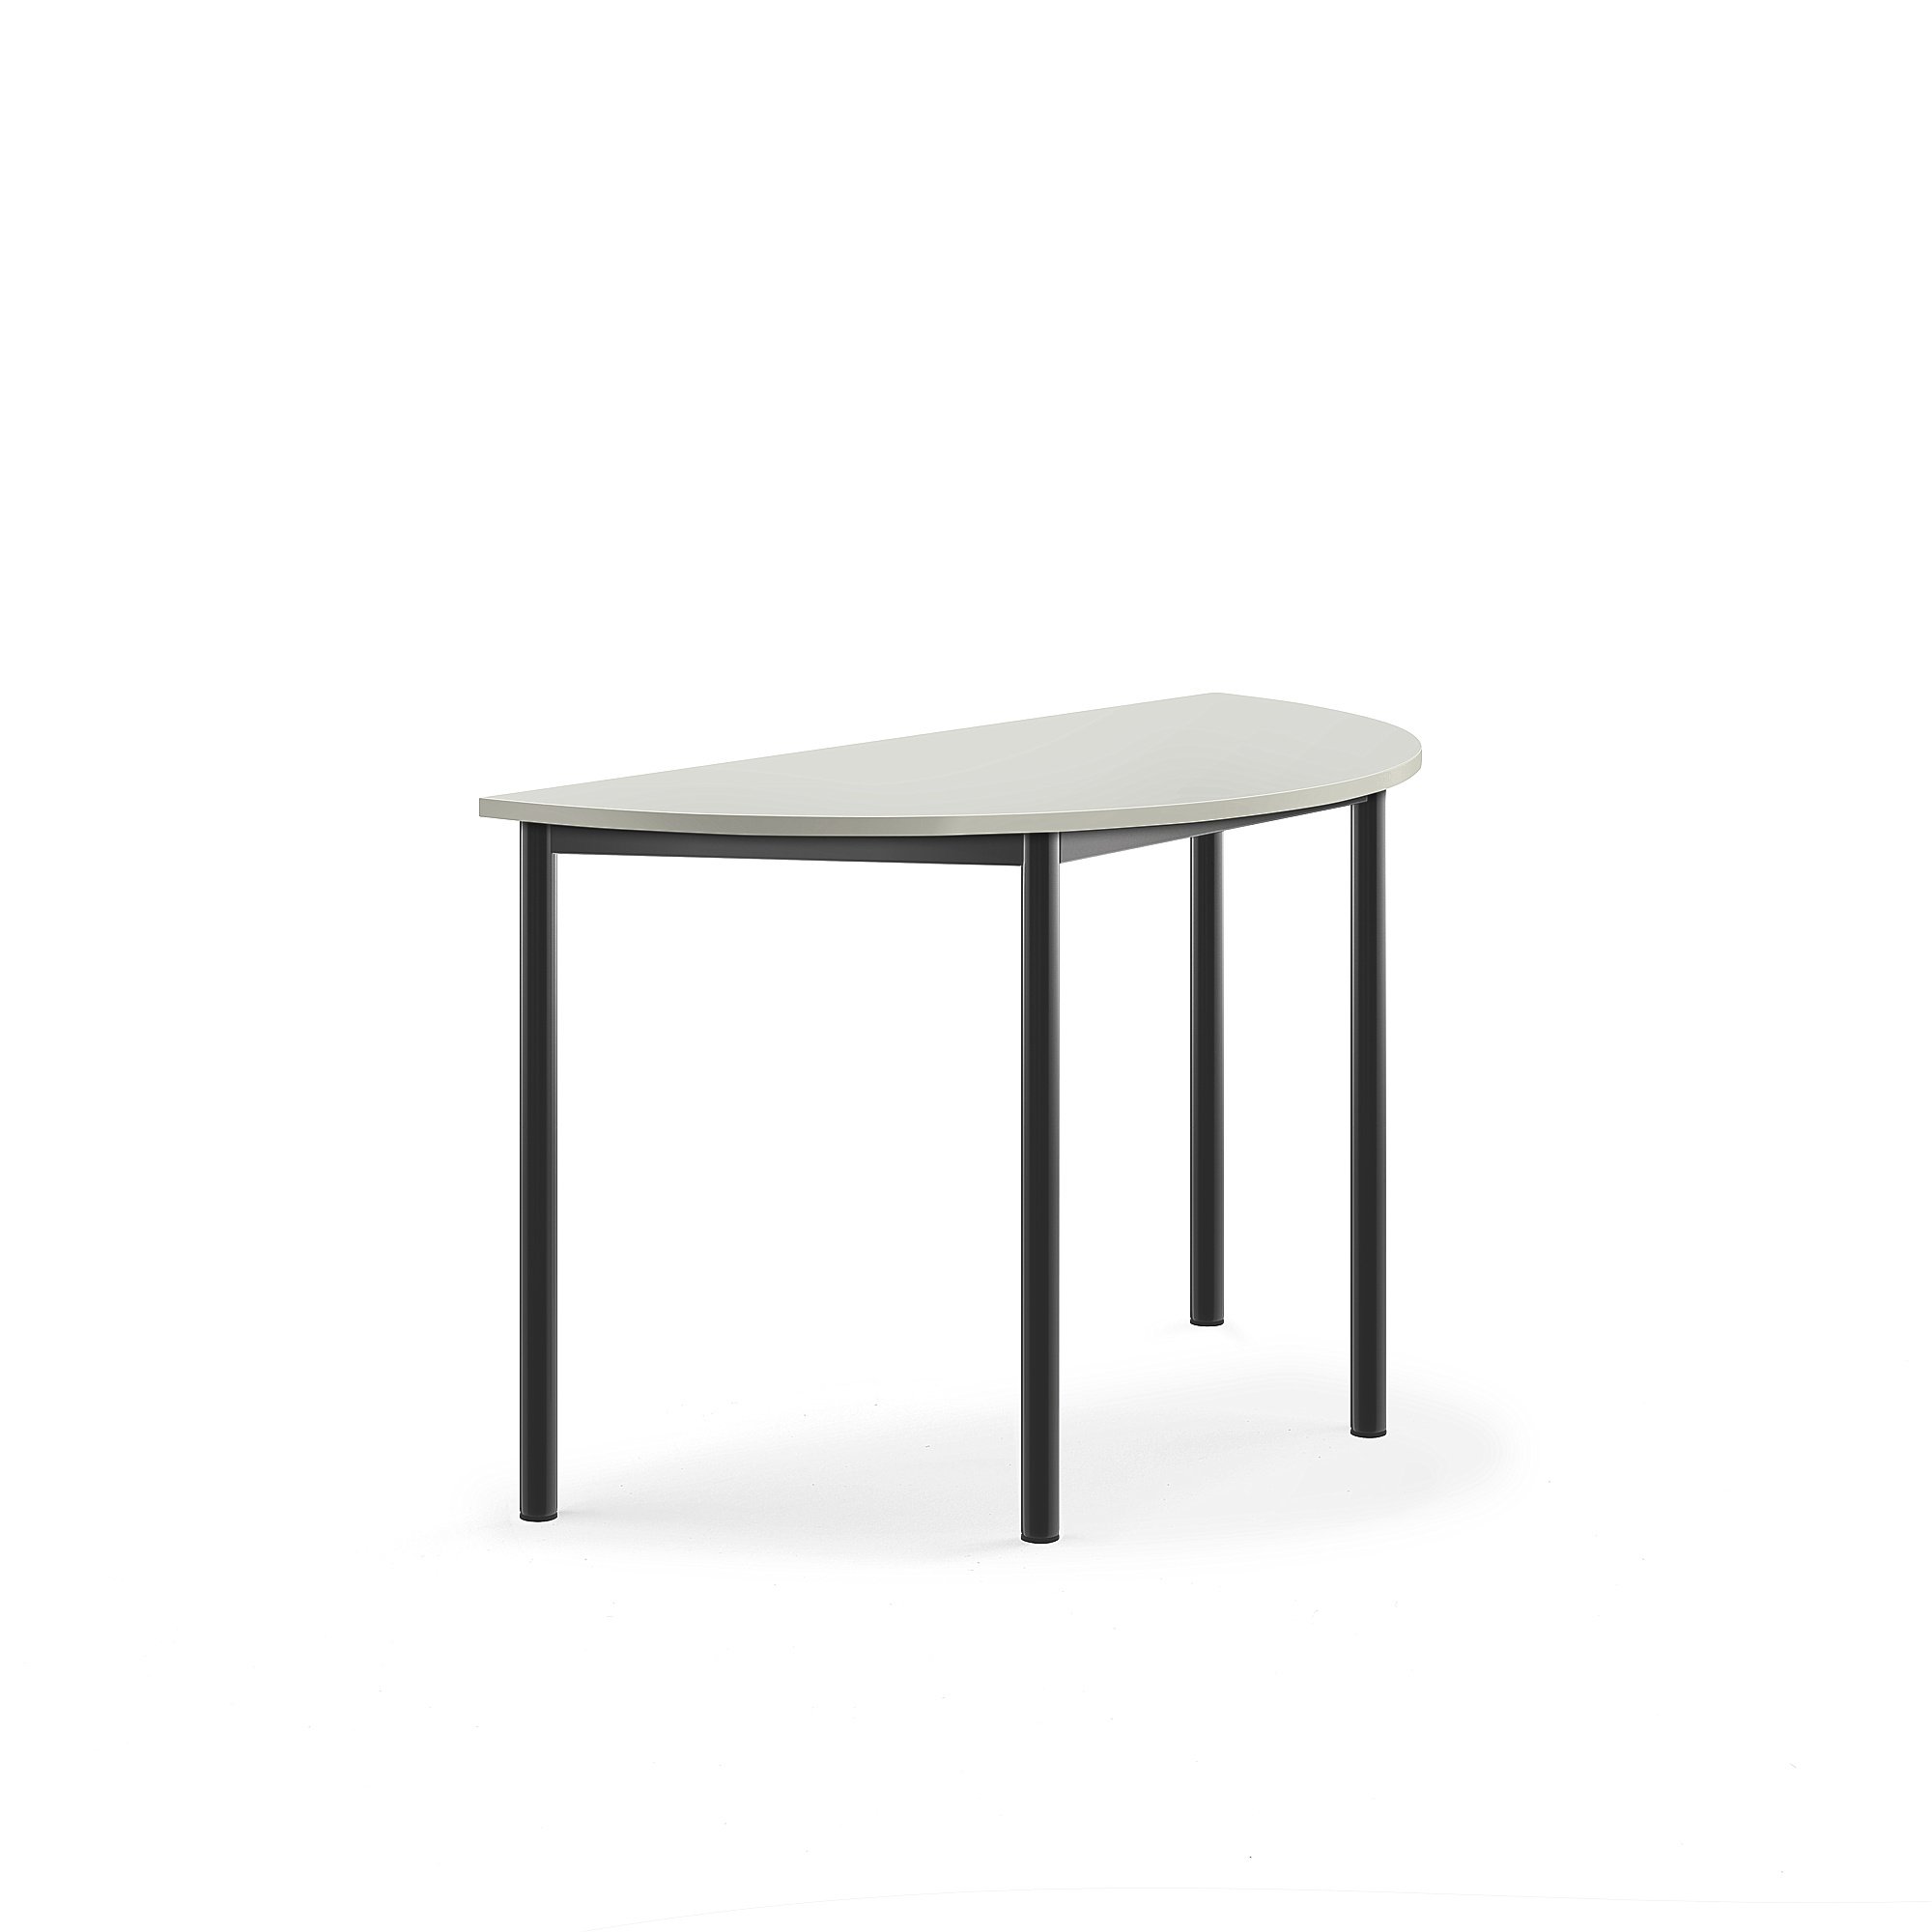 Stůl BORÅS, půlkruh, 1200x600x720 mm, antracitově šedé nohy, HPL deska, šedá